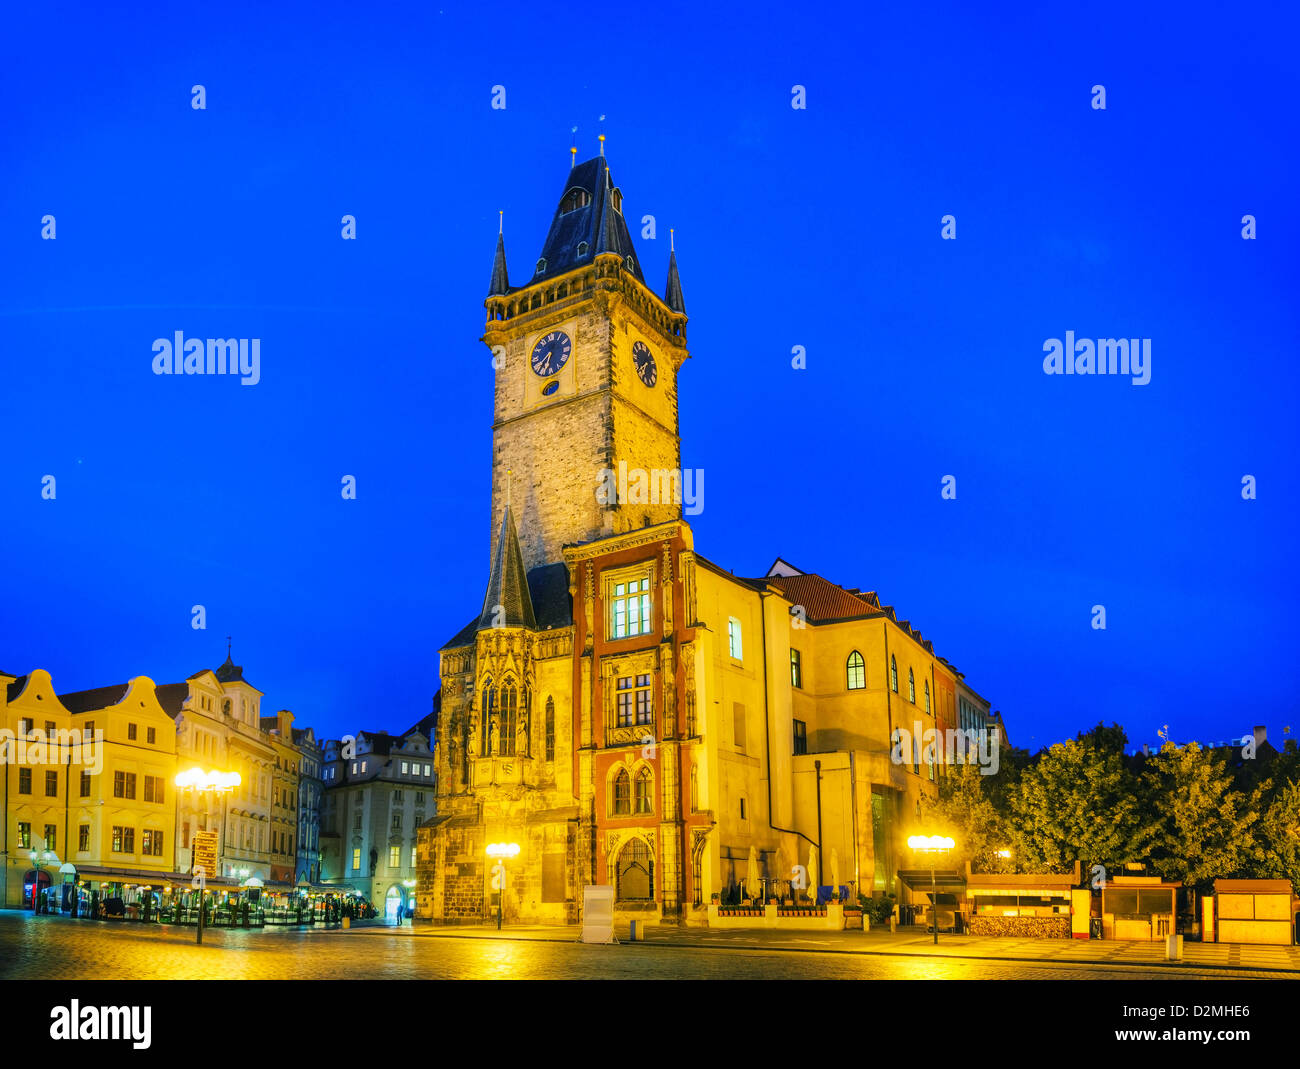 Alten Marktplatz in Prag in der Nacht Stockfoto